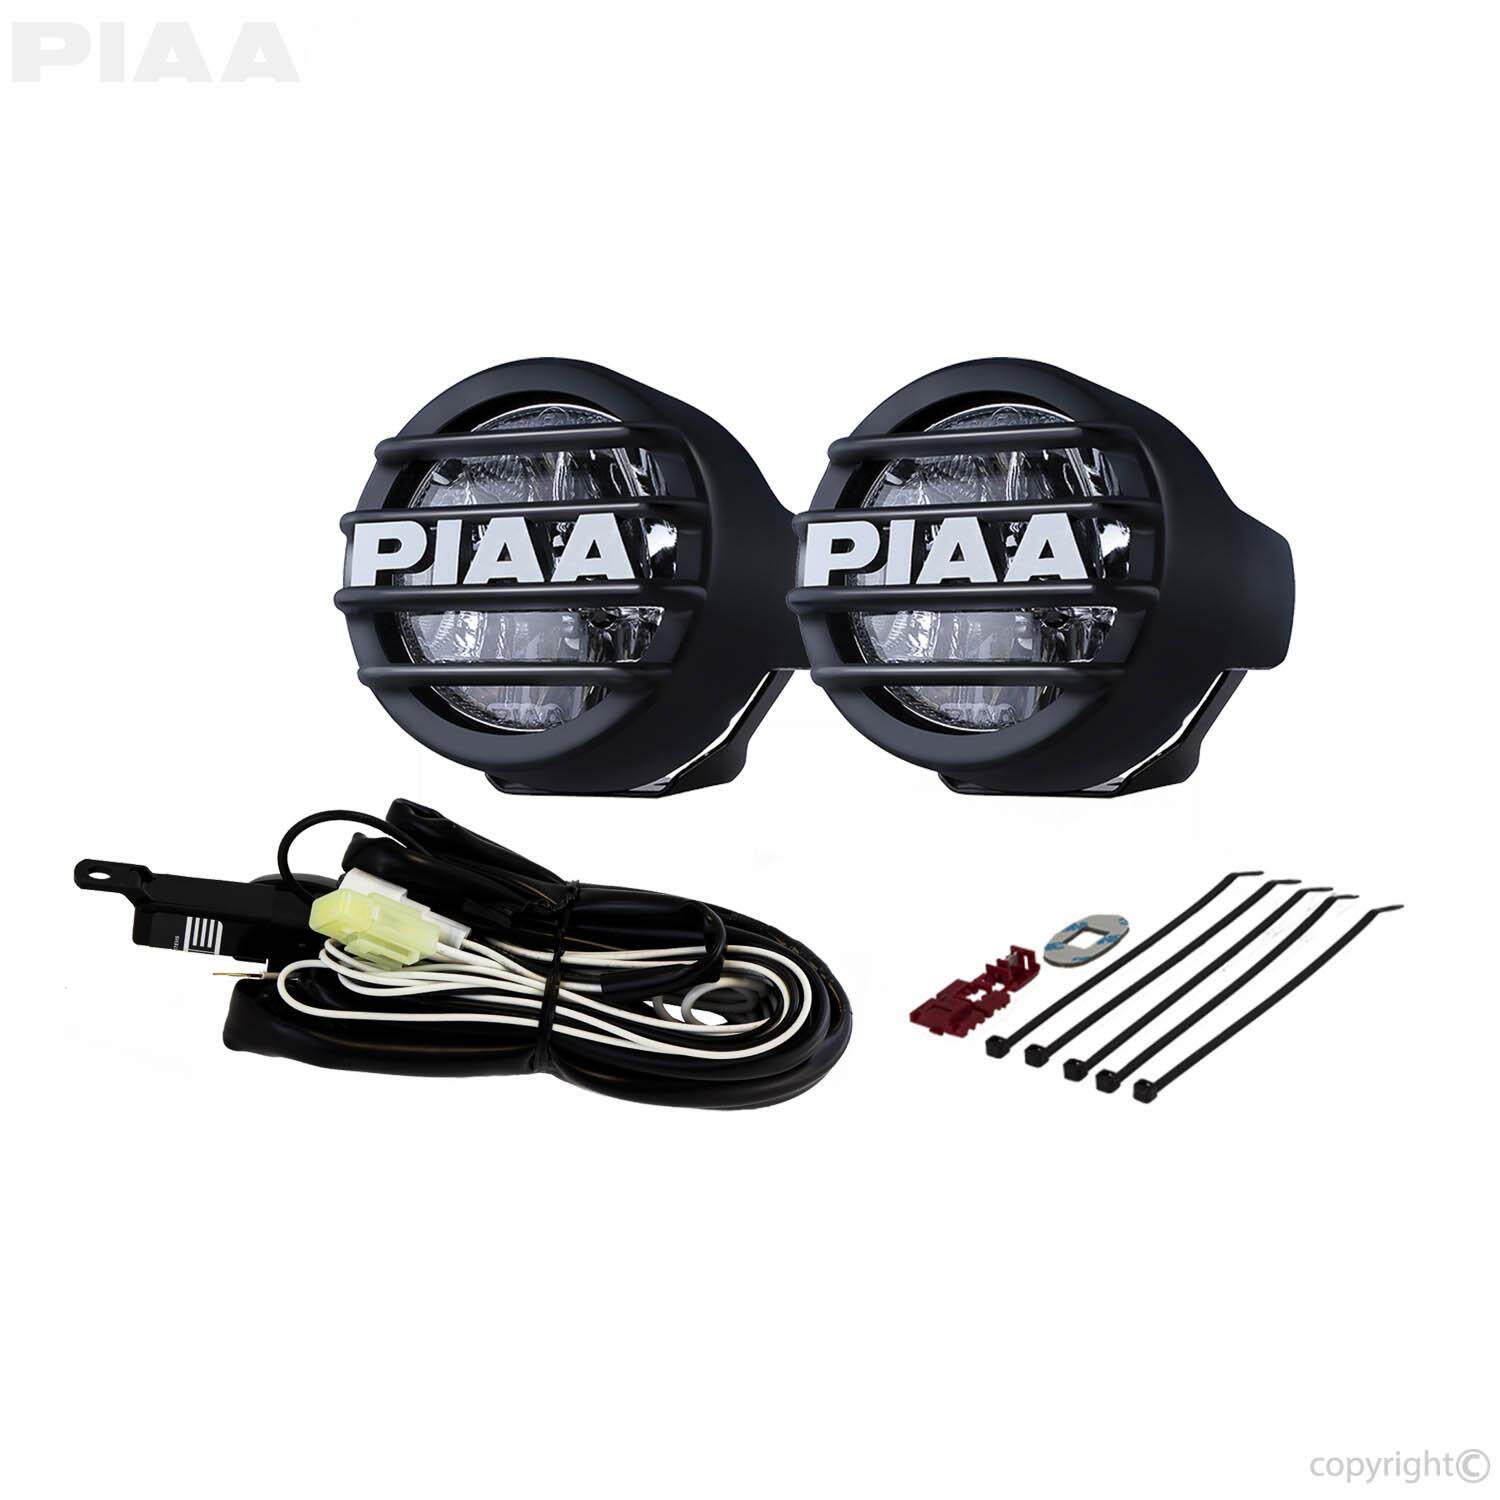 PIAA - DK535BG LP530 3.5 LED White Driving Beam Kit